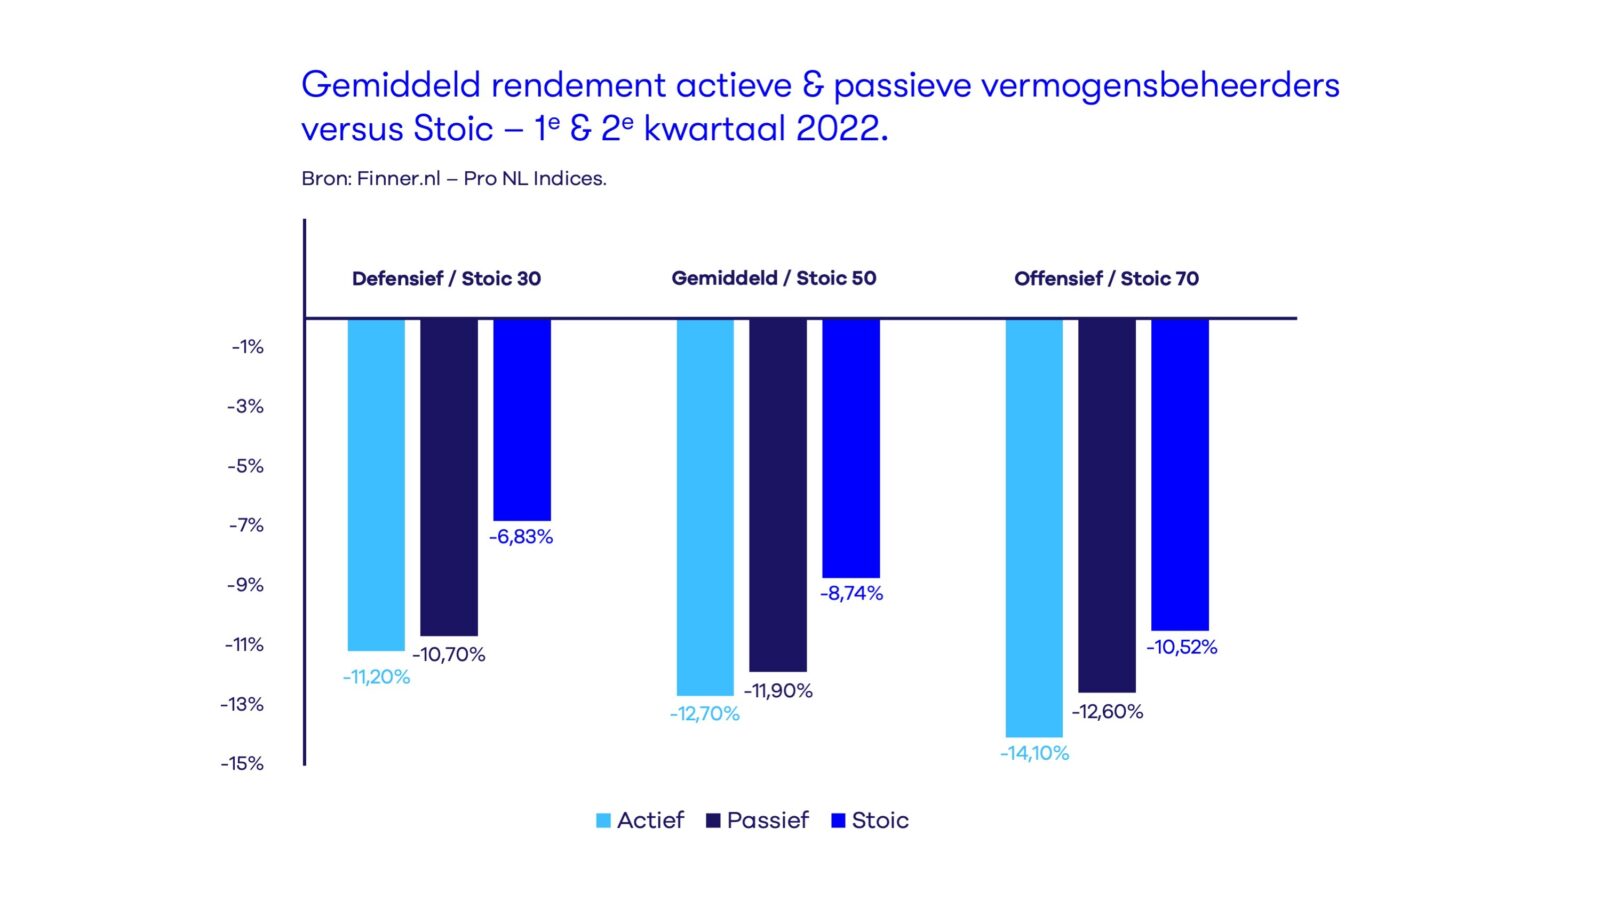 Gemiddelde rendement Stoic versus andere NL vermogensbeheerders q1 en q2 2022.